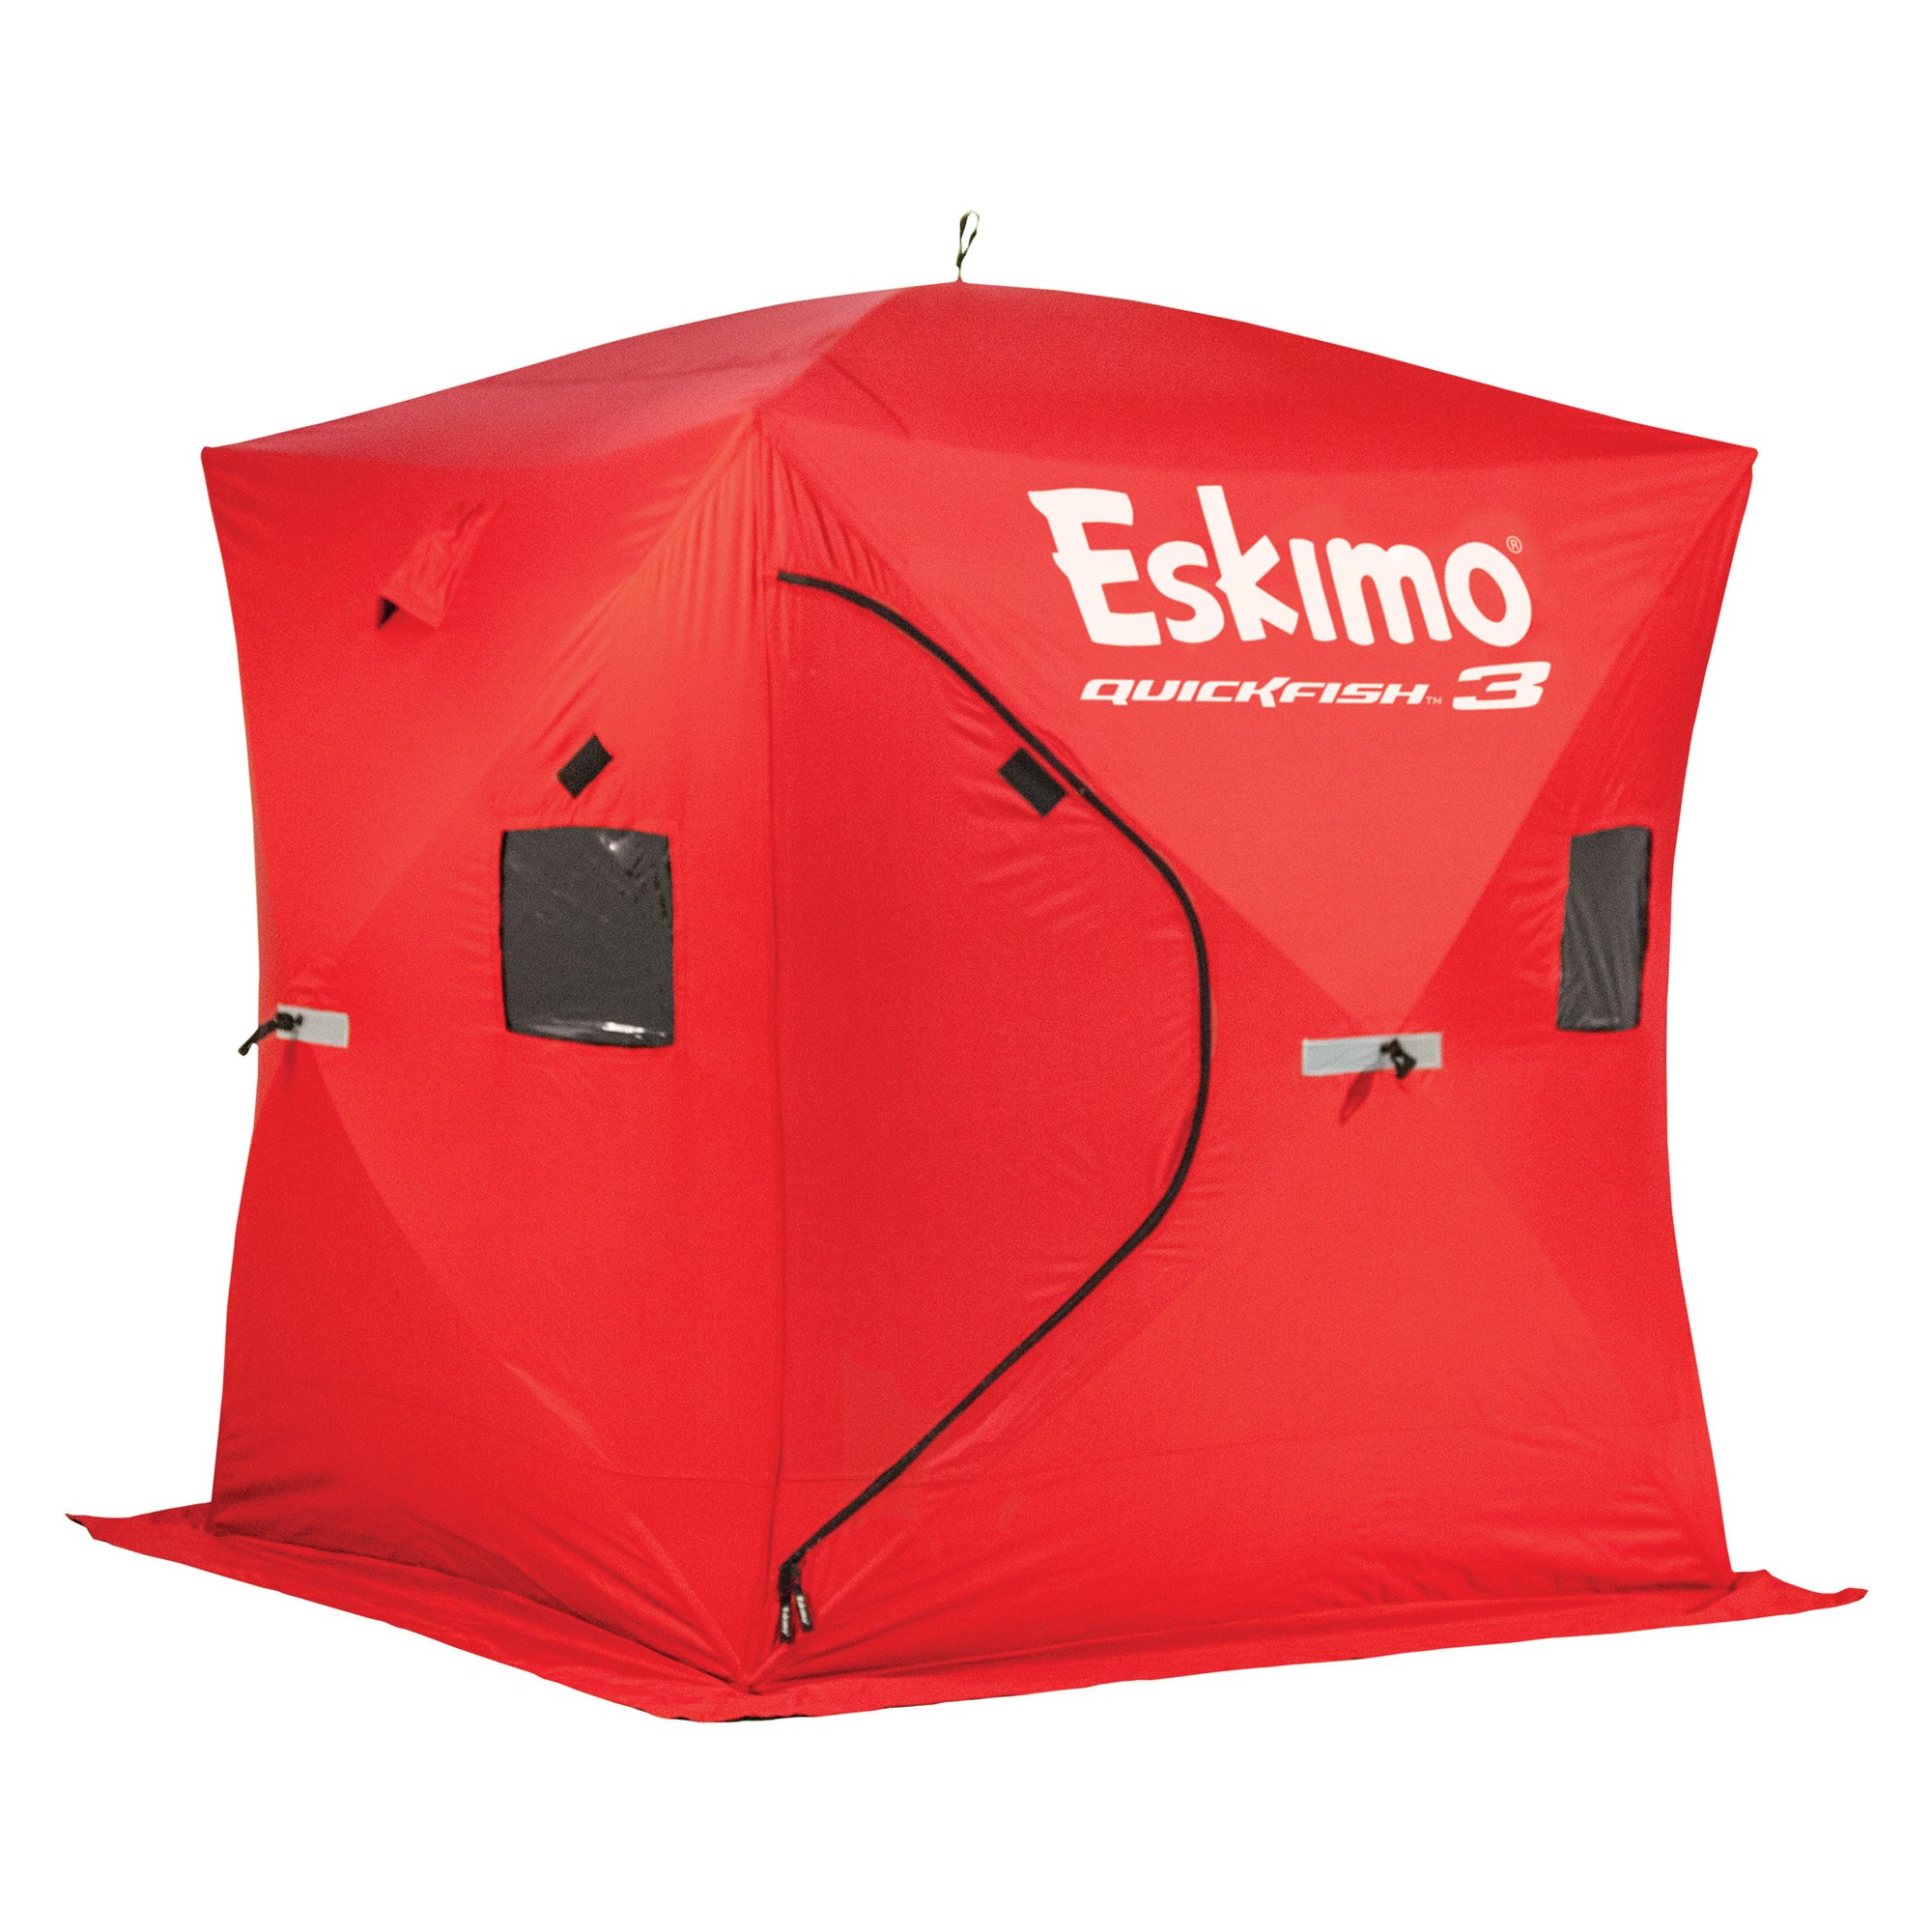 Tente Eskimo Quickfish 6i isolée - 